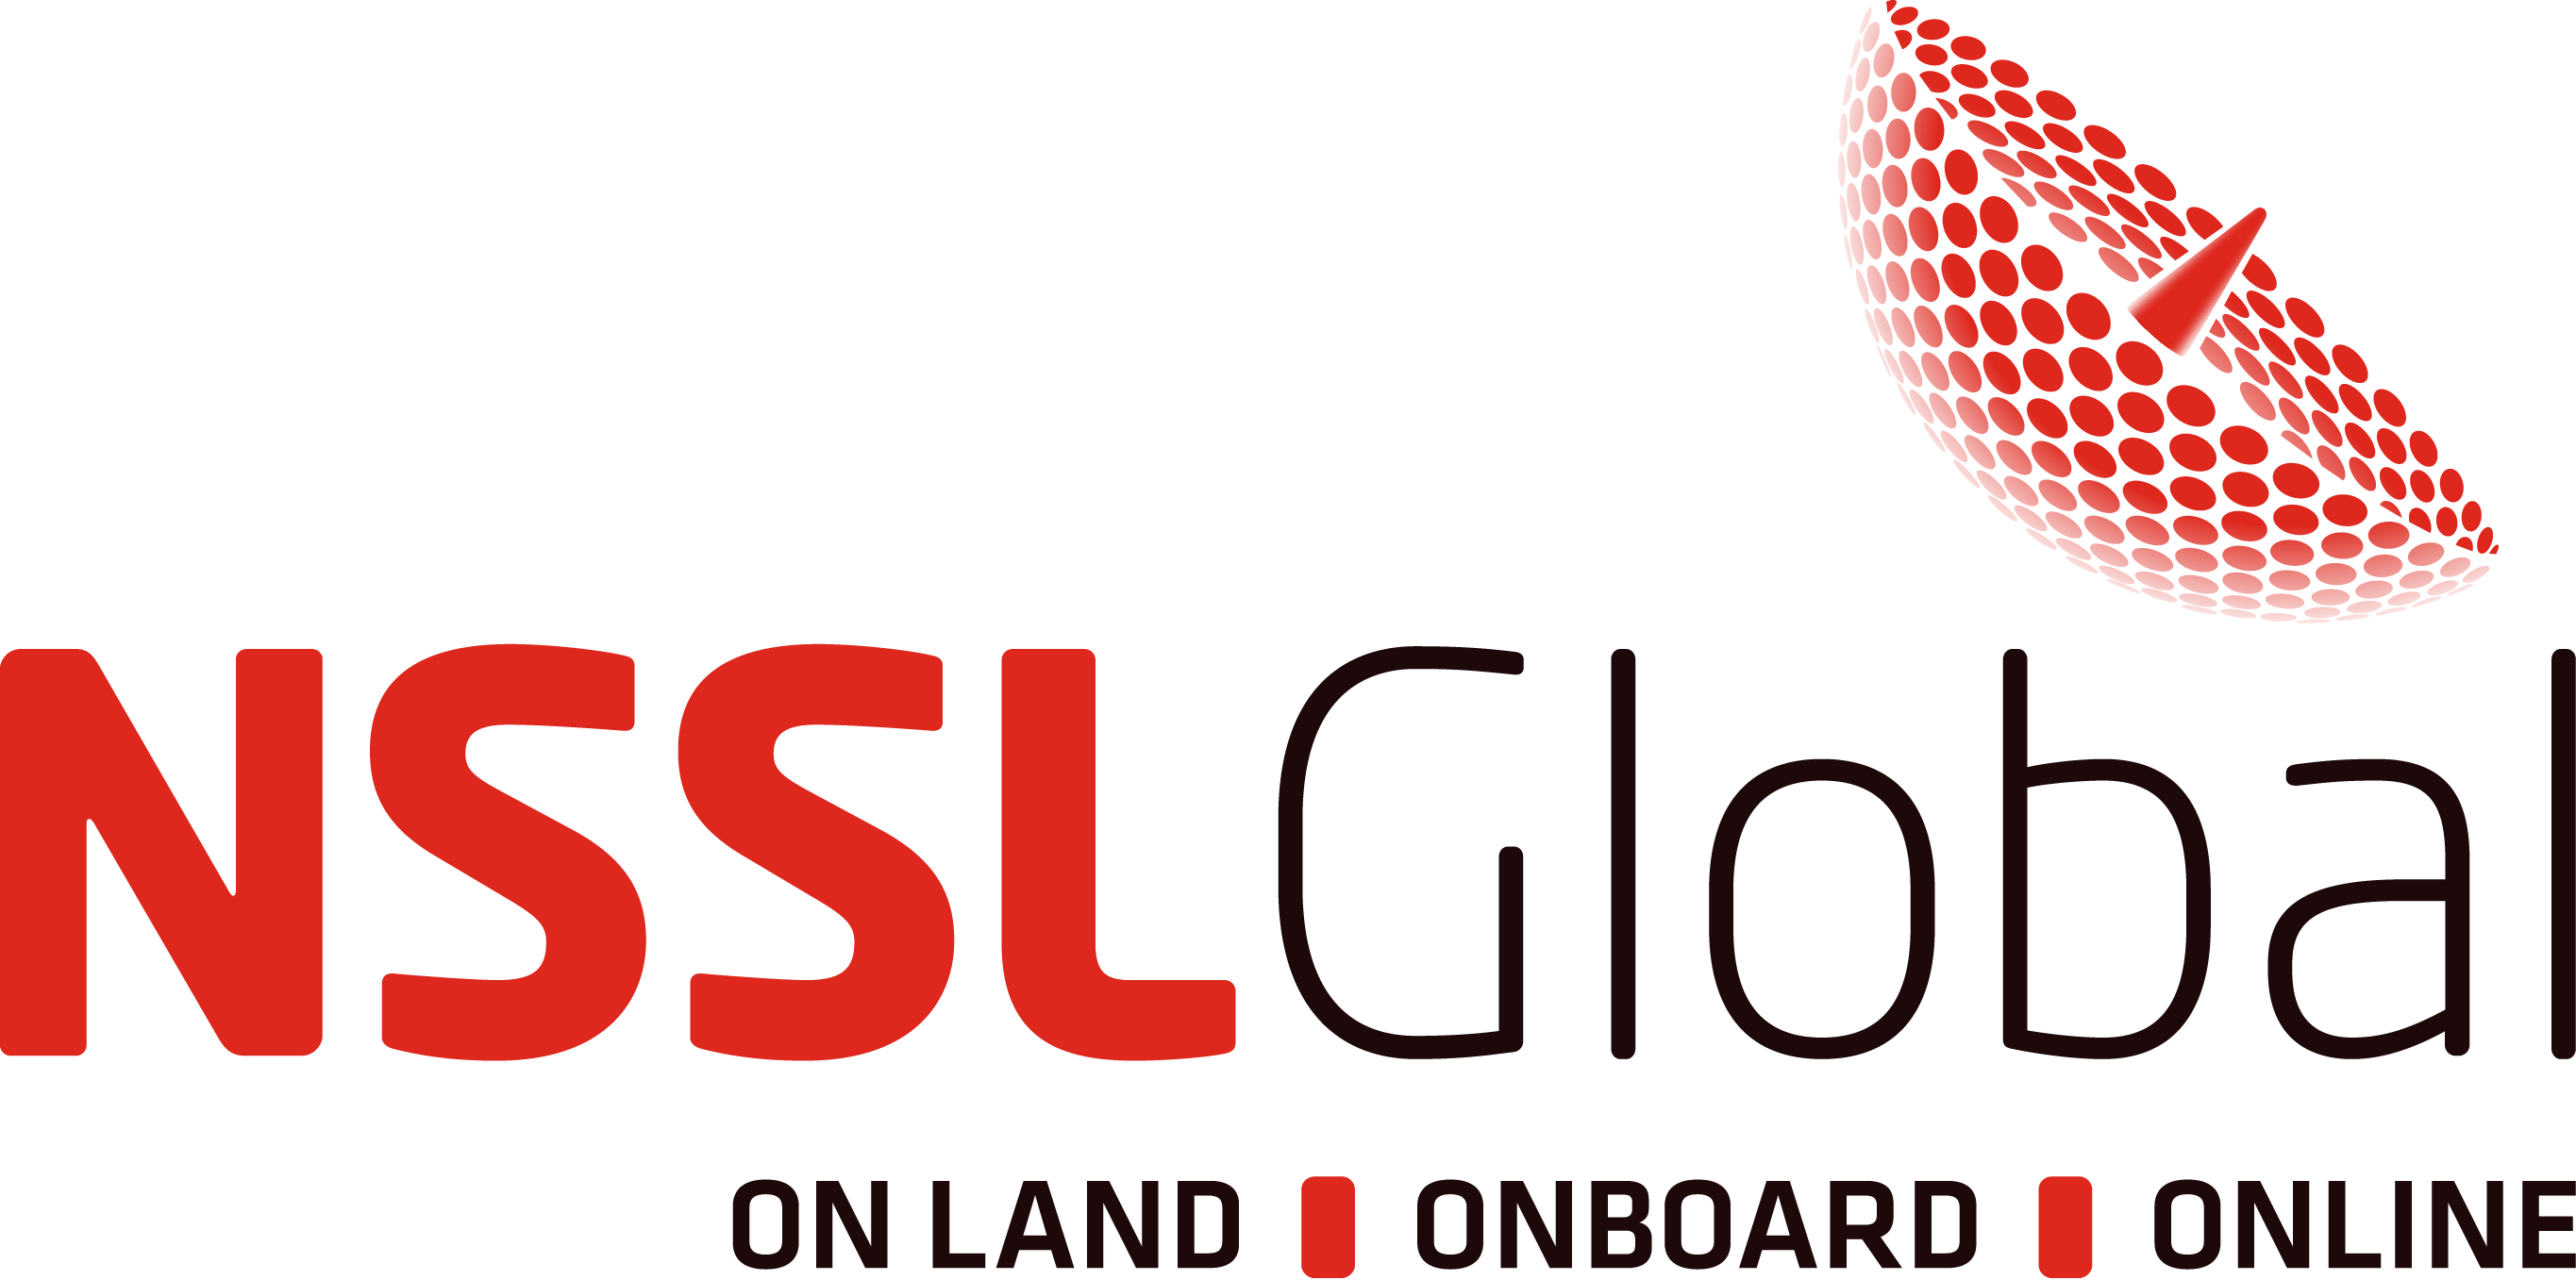 NSSLGlobal Ltd